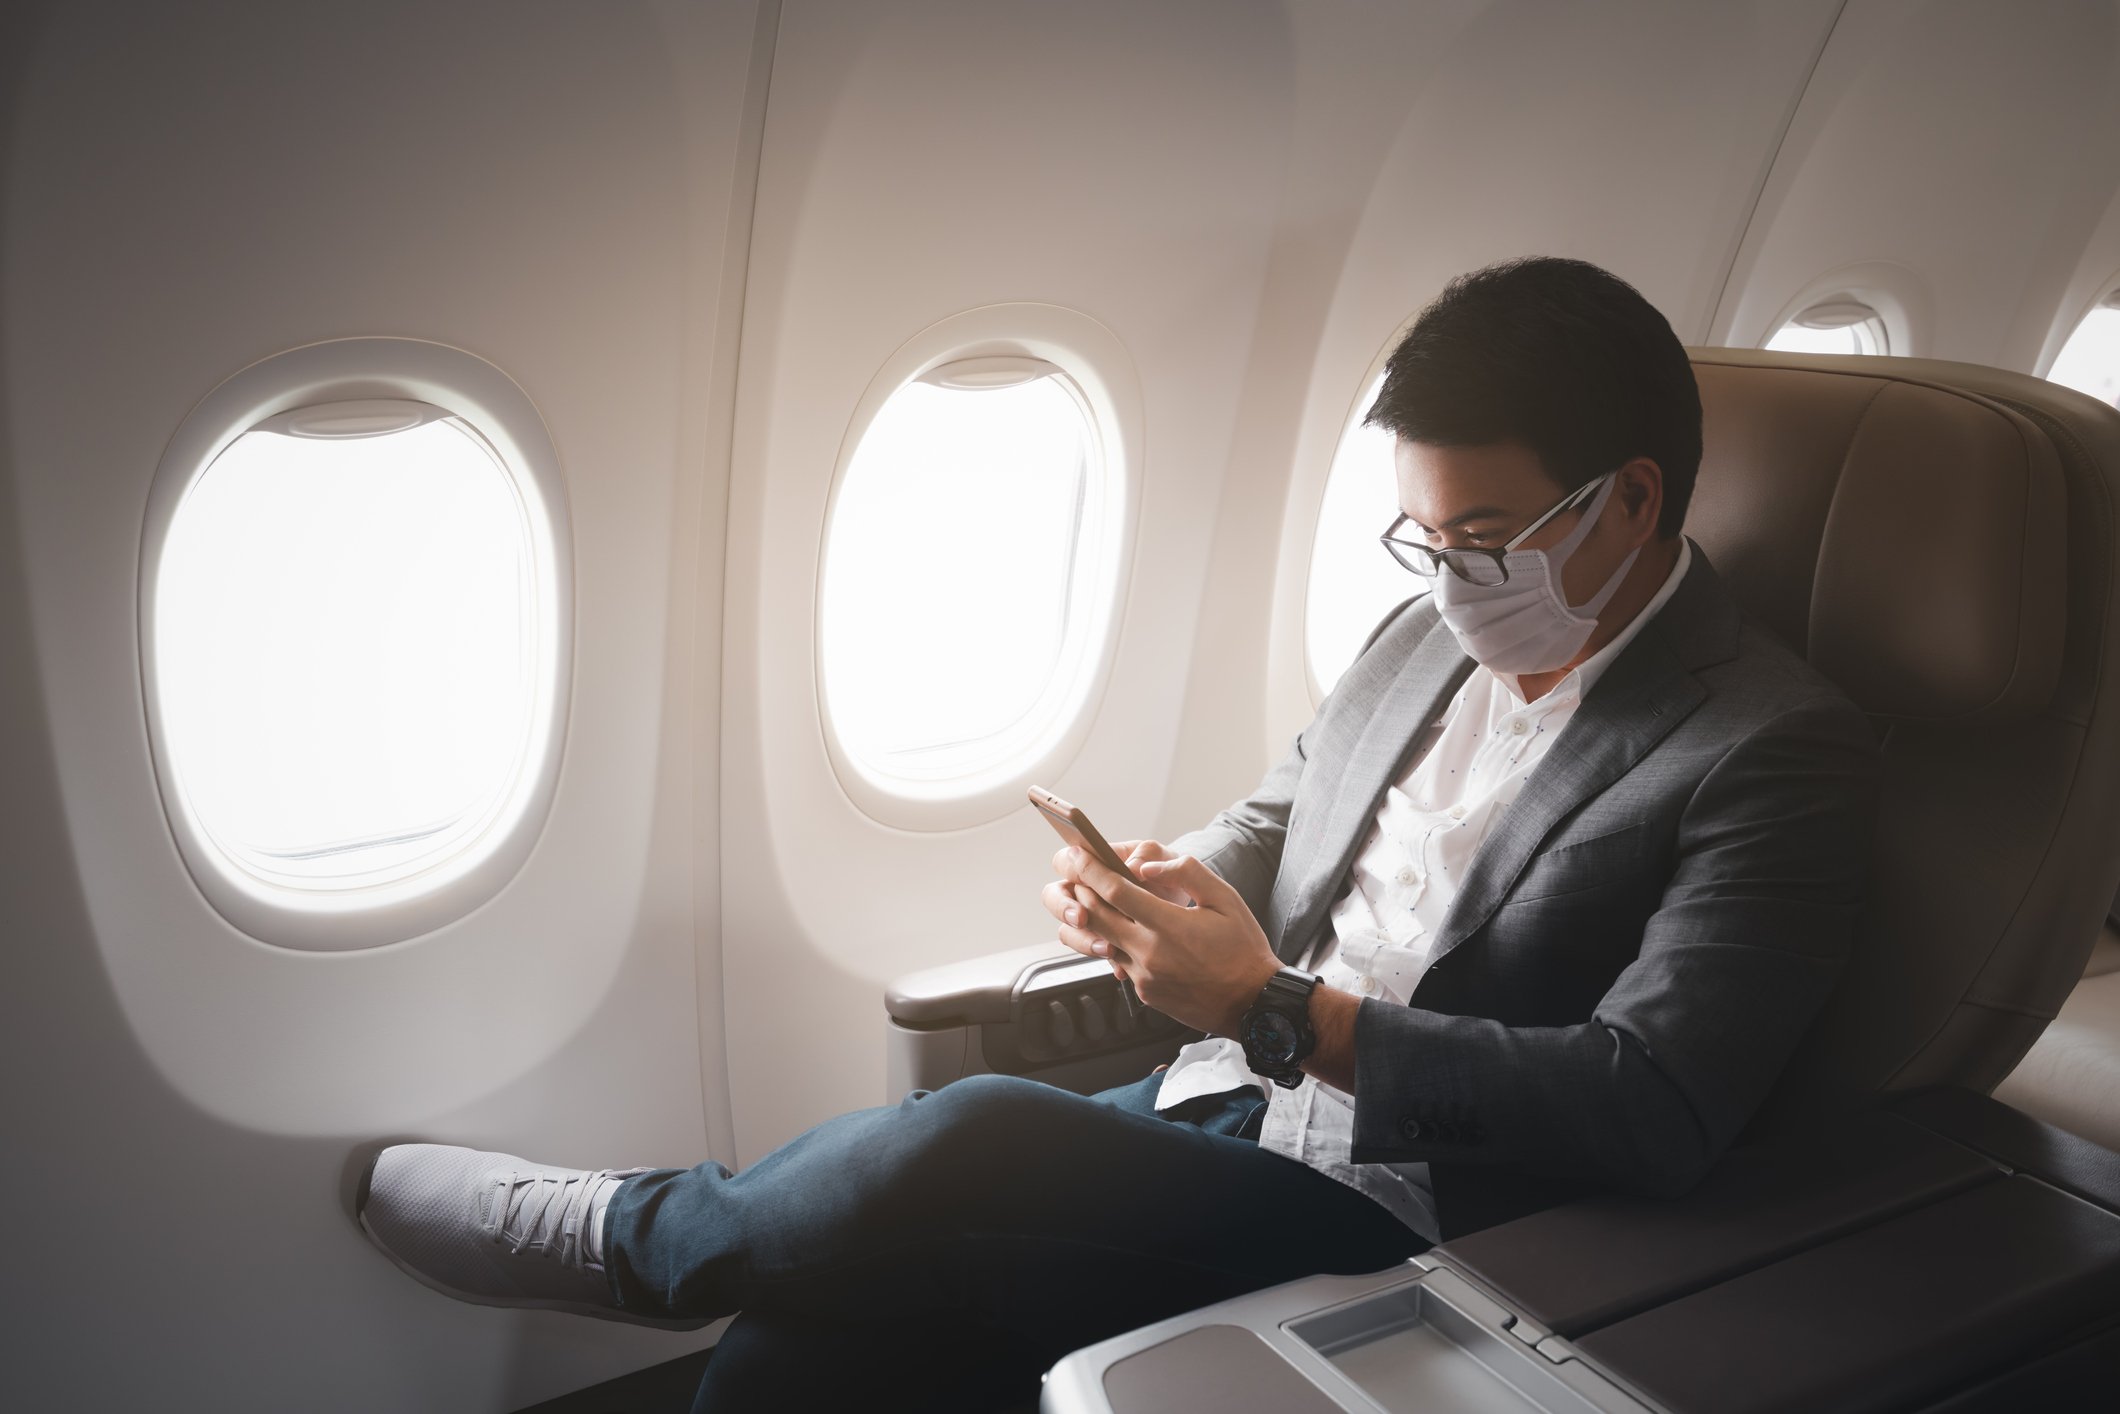 Junger Geschäftsmann sitzt mit aufgesetzter Gesichtsmaske im Flugzeug und benutzt sein Smartphone. | Quelle: Getty Images